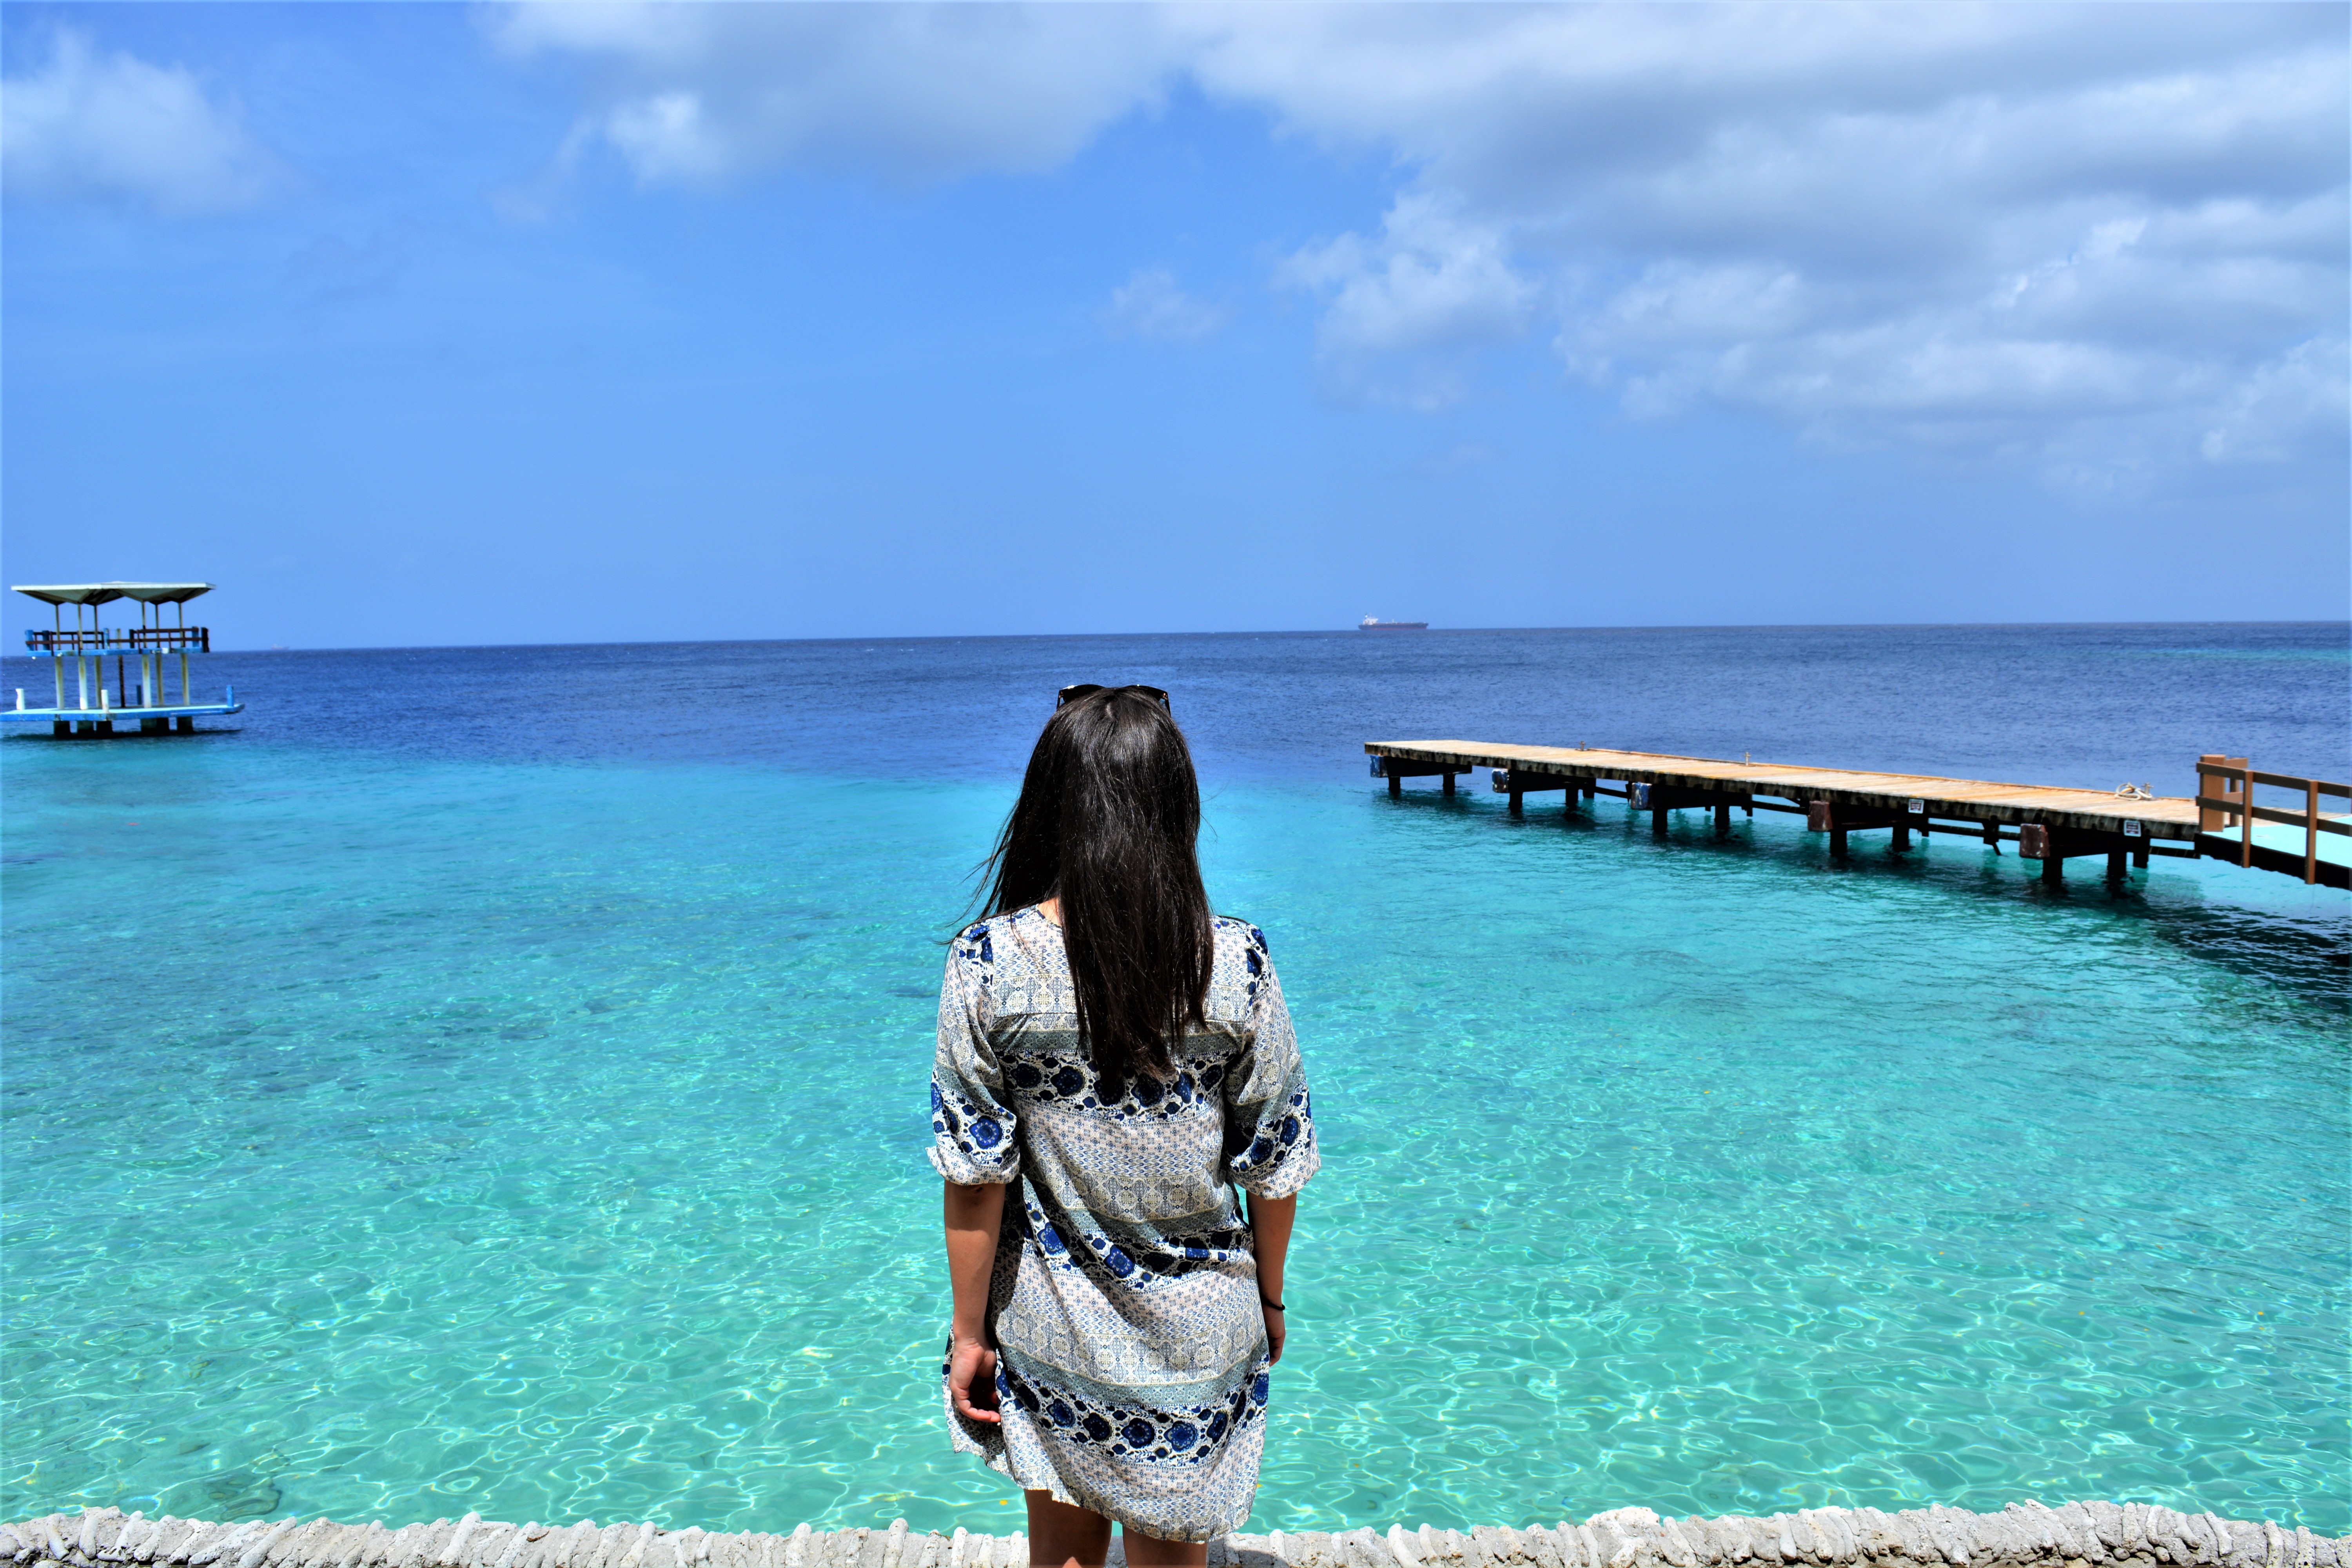 Curaçao : 14 photos à faire rêver!